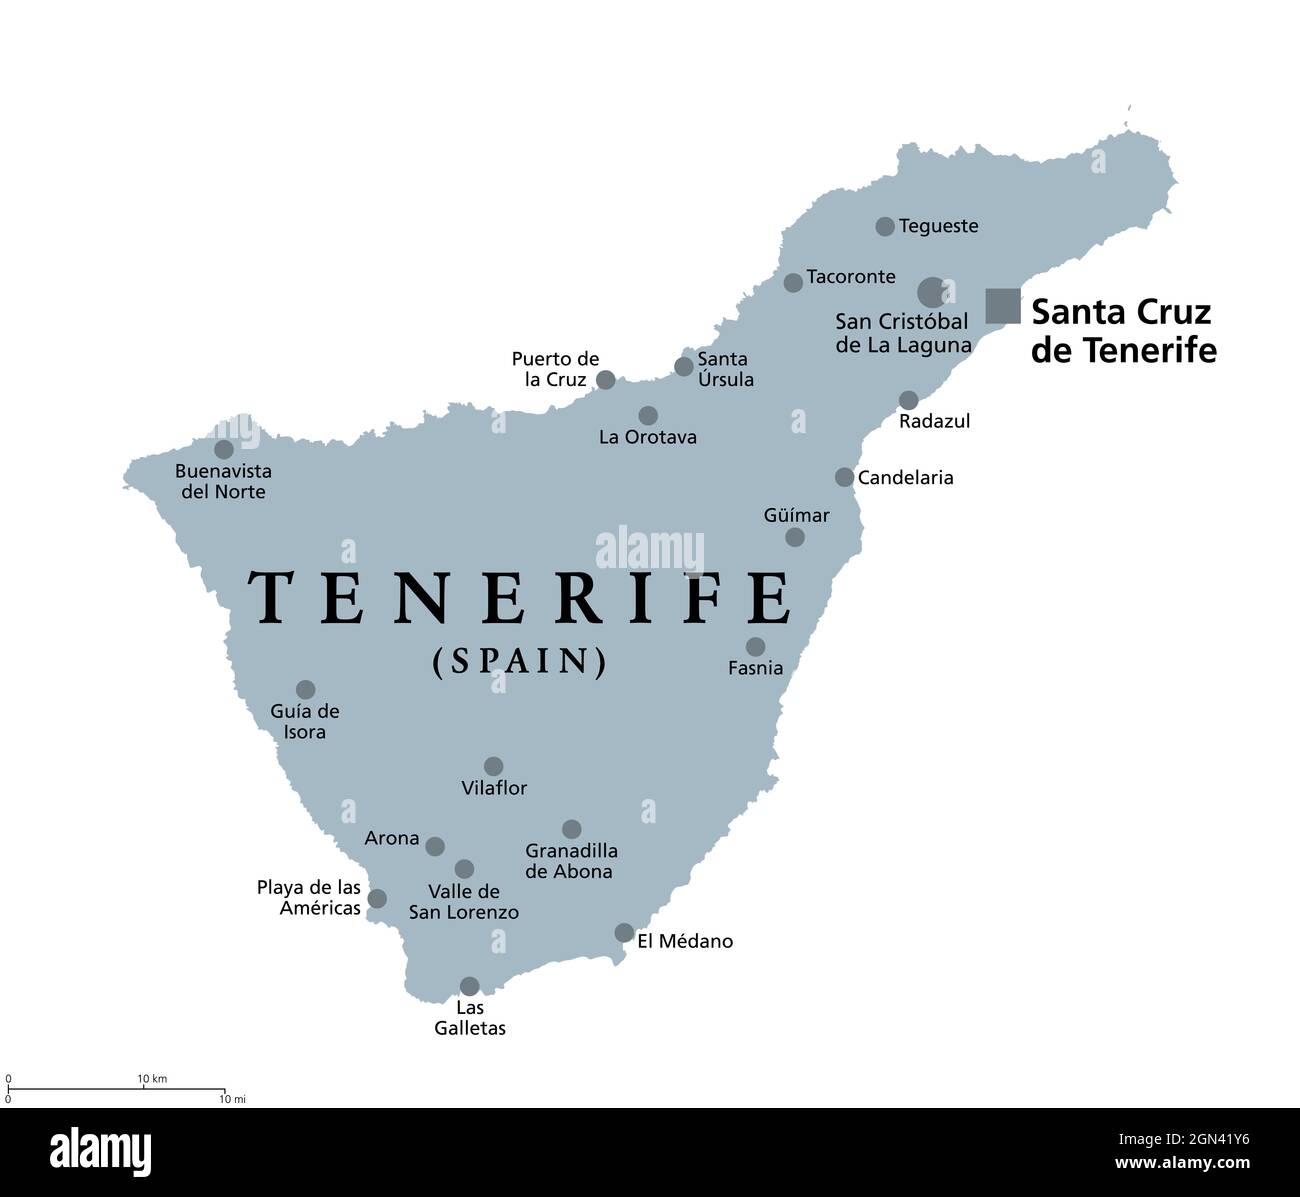 Insel Teneriffa, graue politische Landkarte, mit Hauptstadt Santa Cruz de Teneriffa. Die größte und bevölkerungsreichste Insel der Kanarischen Inseln, Spanien. Stockfoto